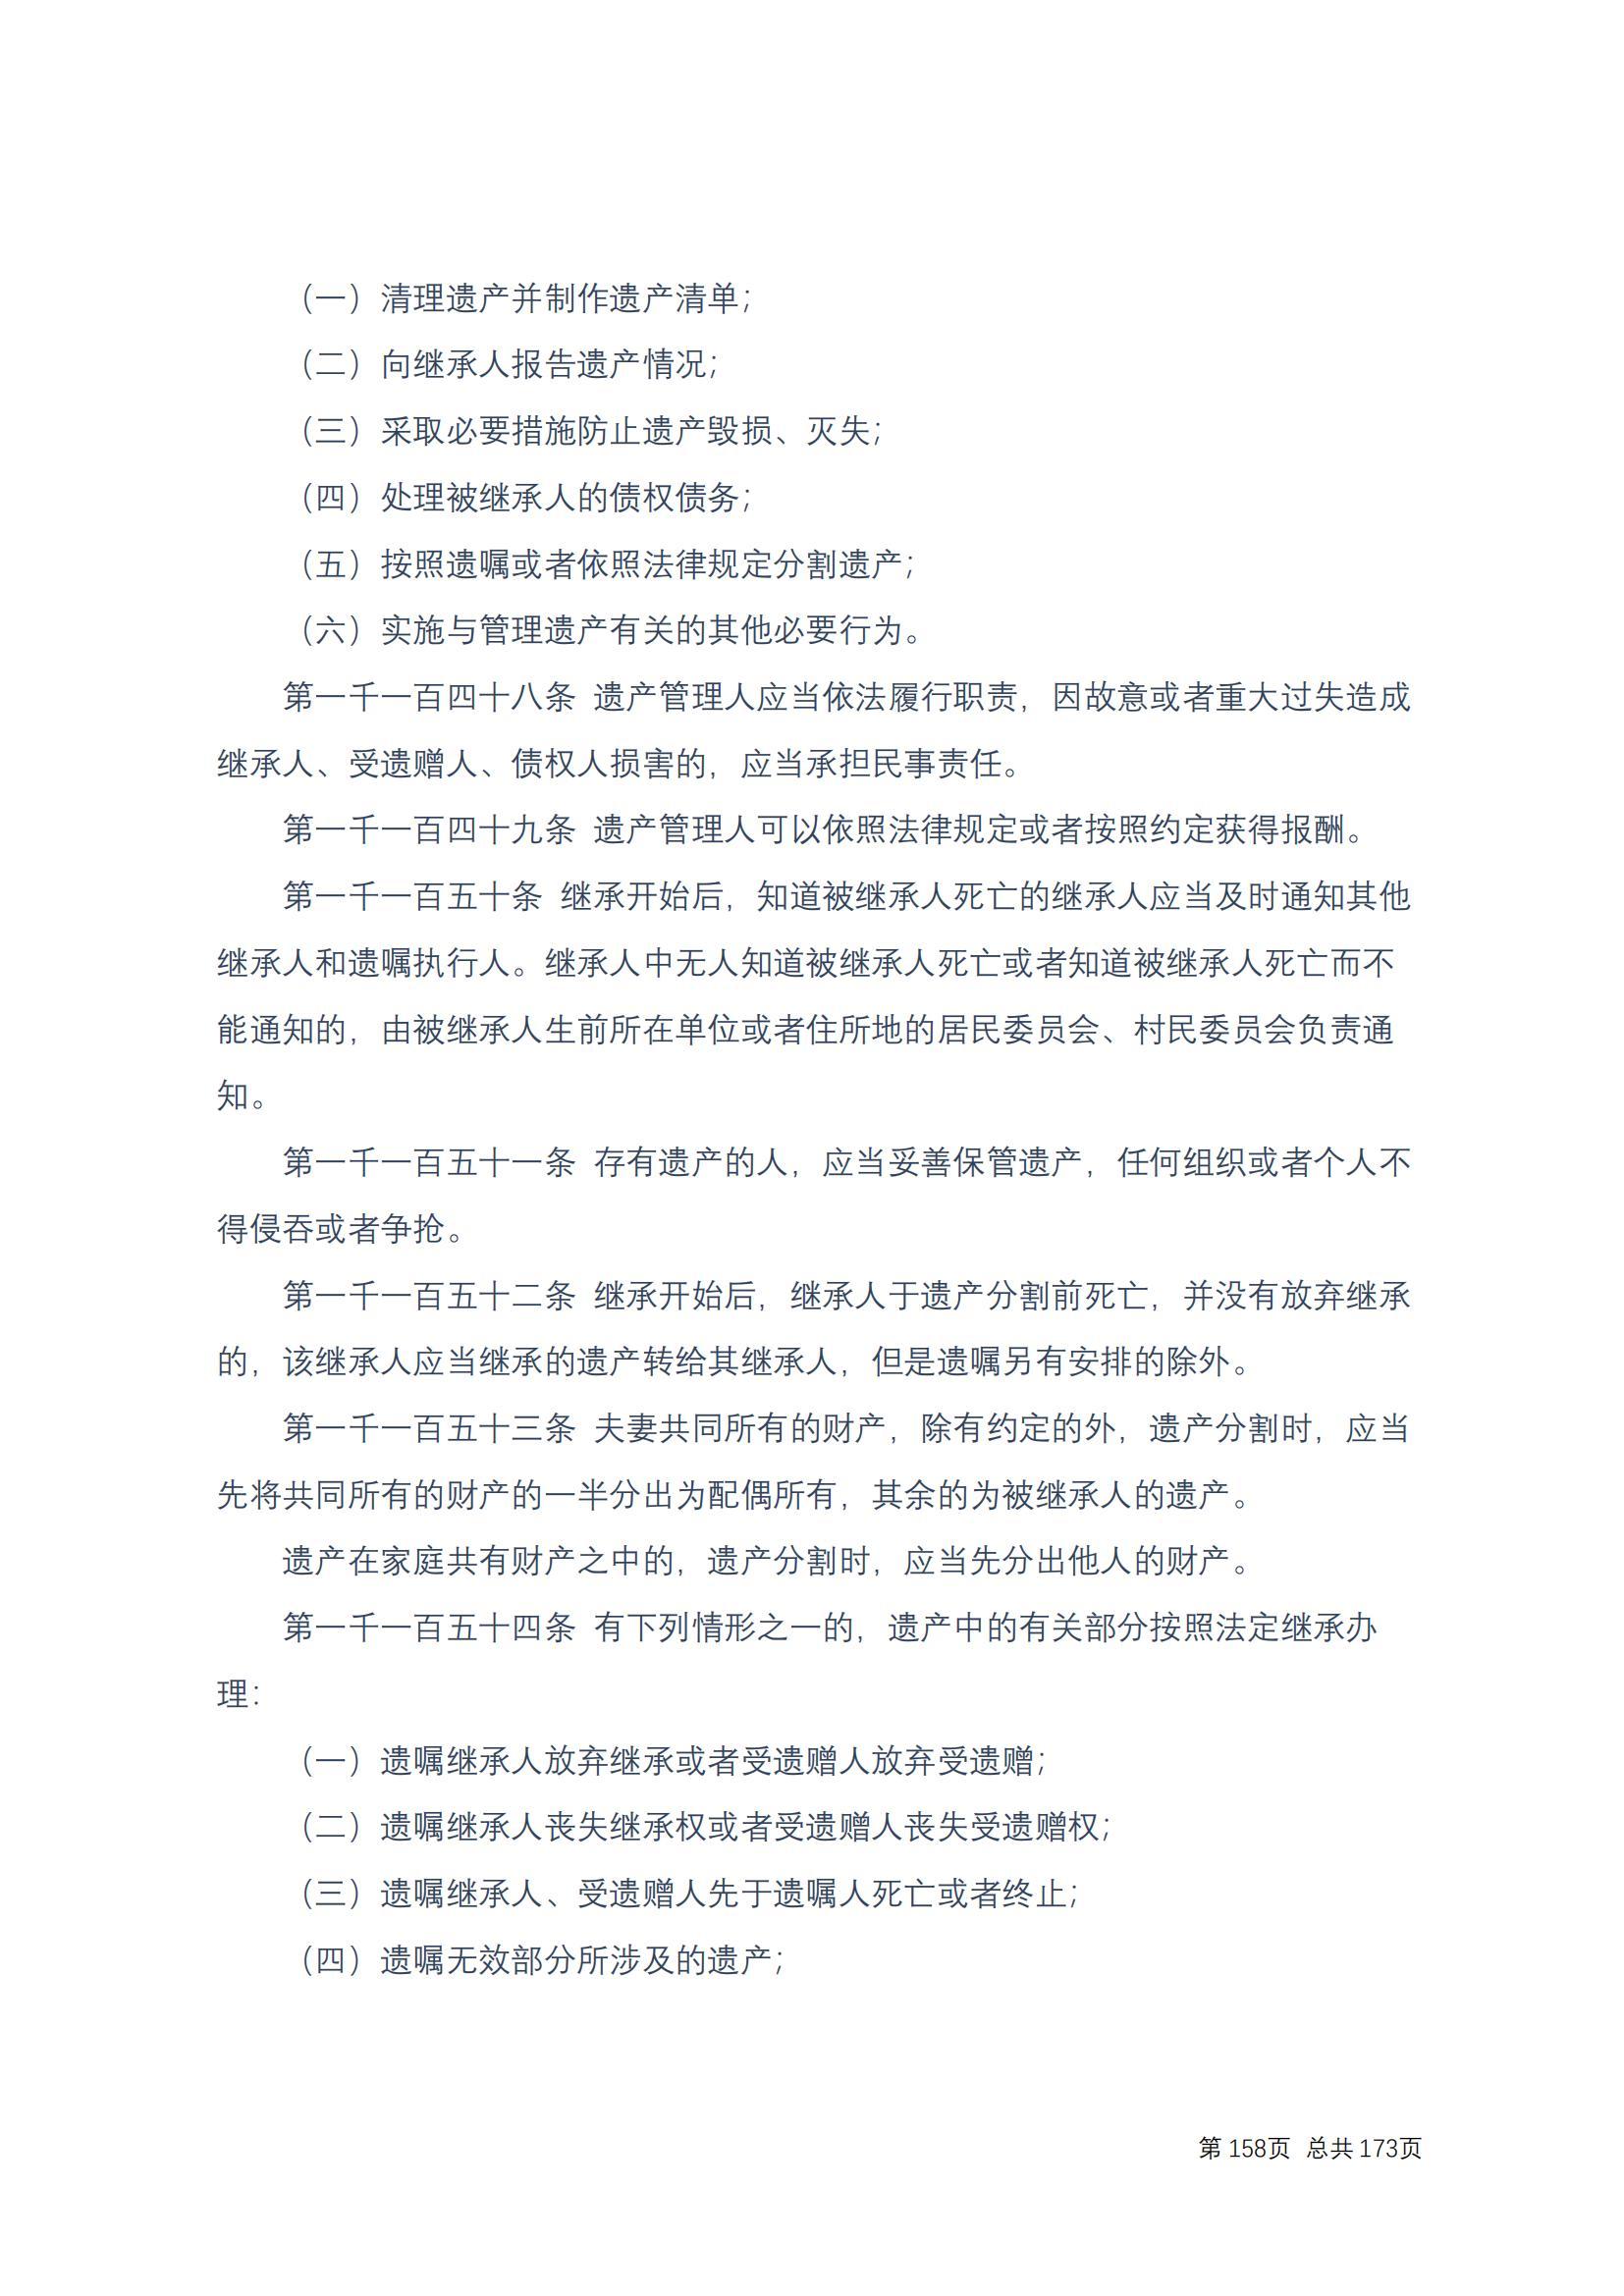 中华人民共和国民法典 修改过_157